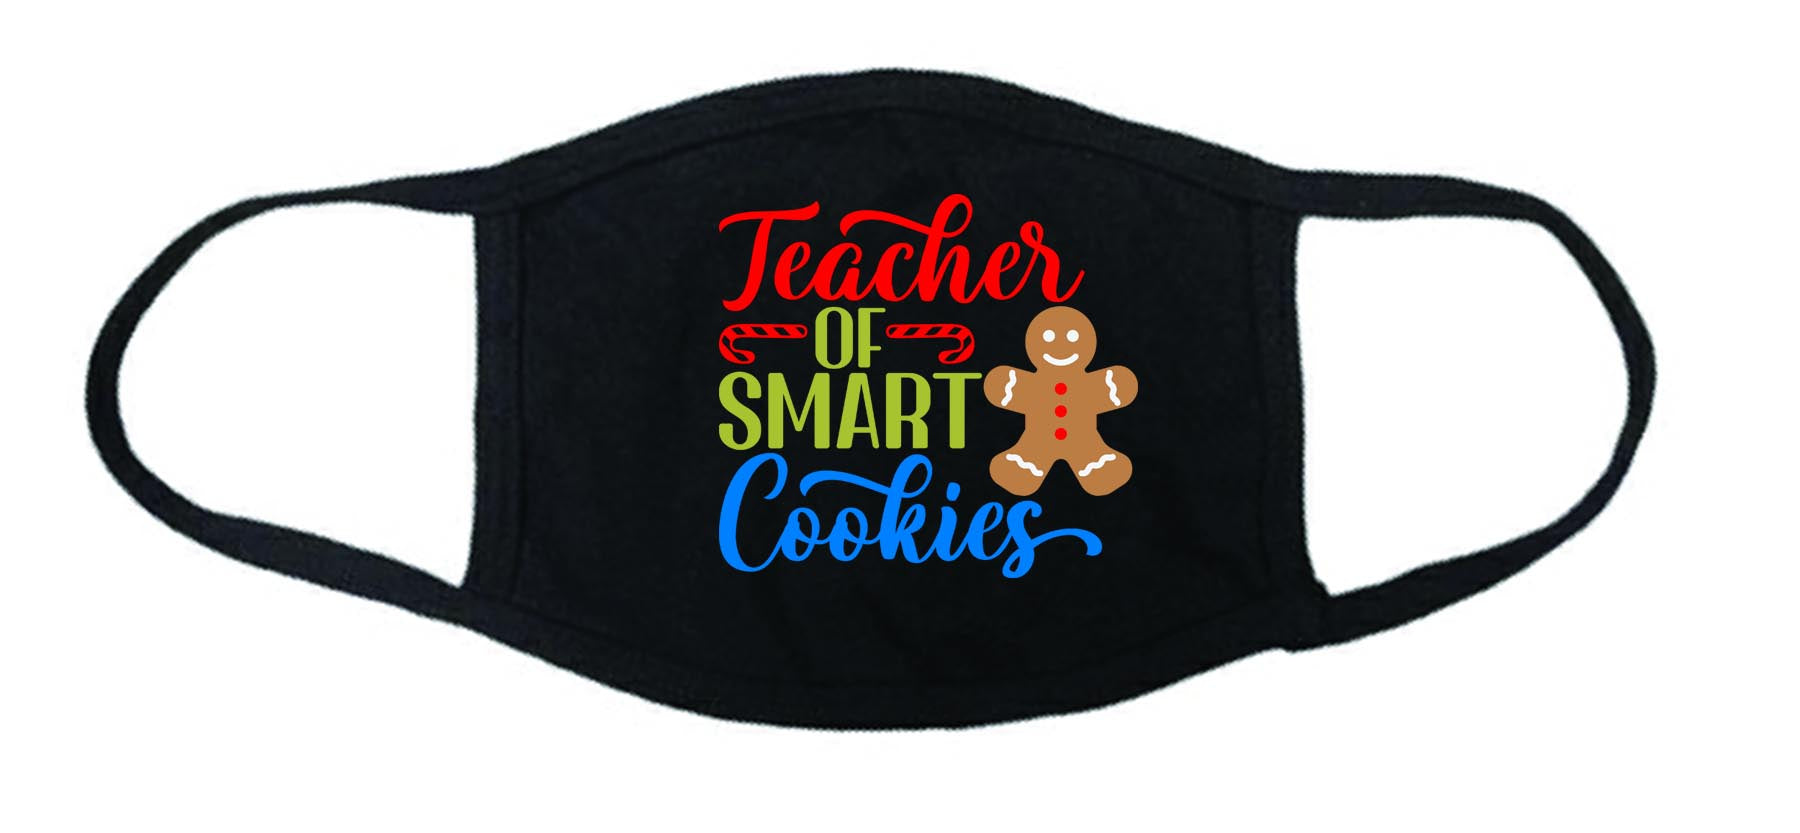 Teacher of smart cookies face mask, Masks